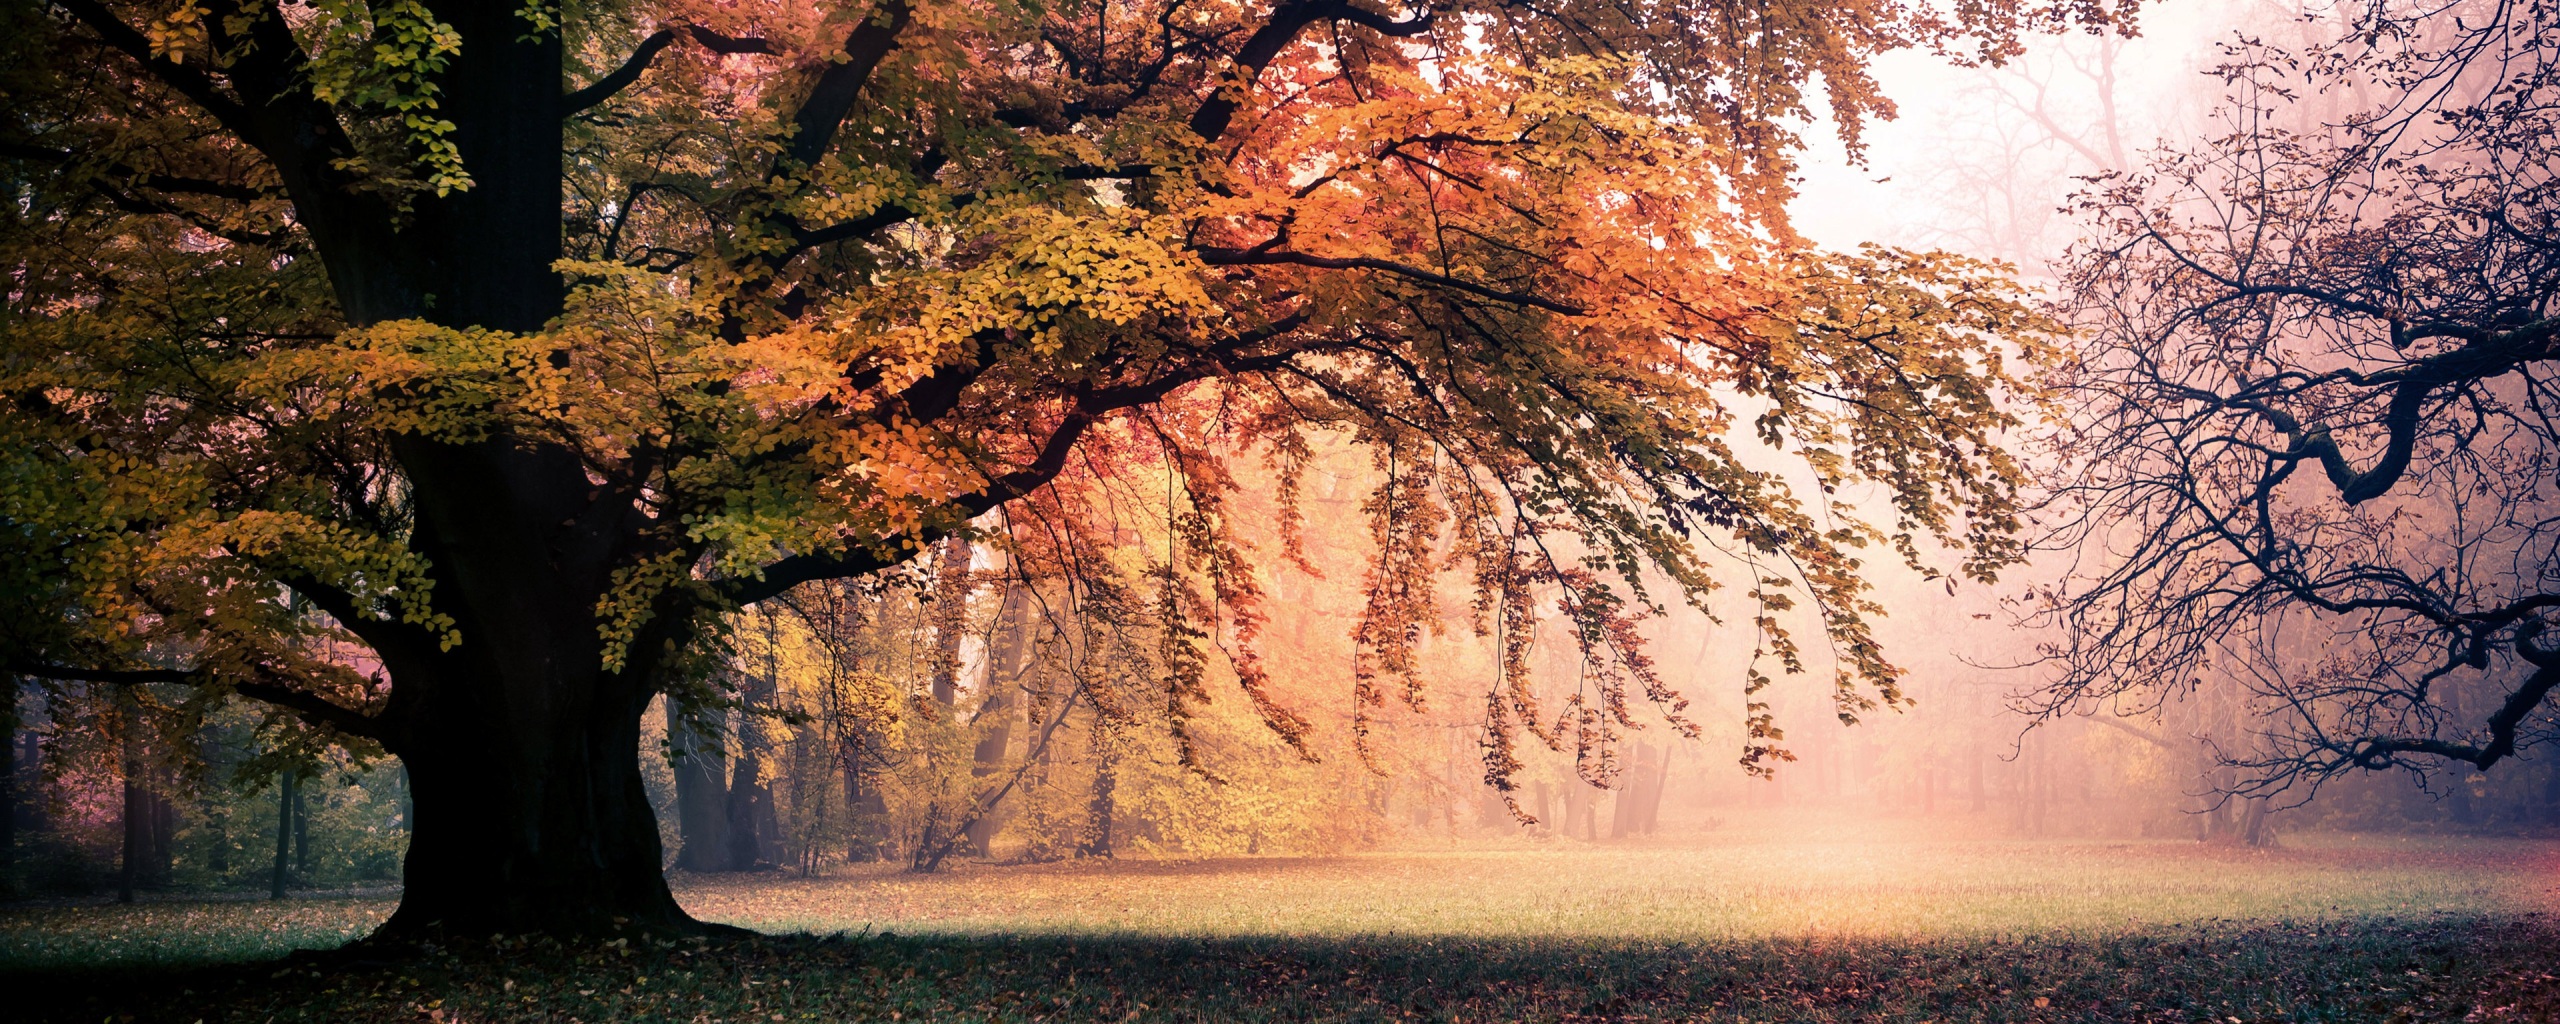 Ngắm nhìn những bức ảnh Fallen Leaves 4K Wallpaper lung linh và mê hoặc hơn bao giờ hết, khiến bạn có cảm giác đang đi trên những con đường rực rỡ màu sắc của mùa thu. Thử đắm mình trong mùi hương lá rụng và tận hưởng cảm giác yên bình mà mùa thu đem lại.